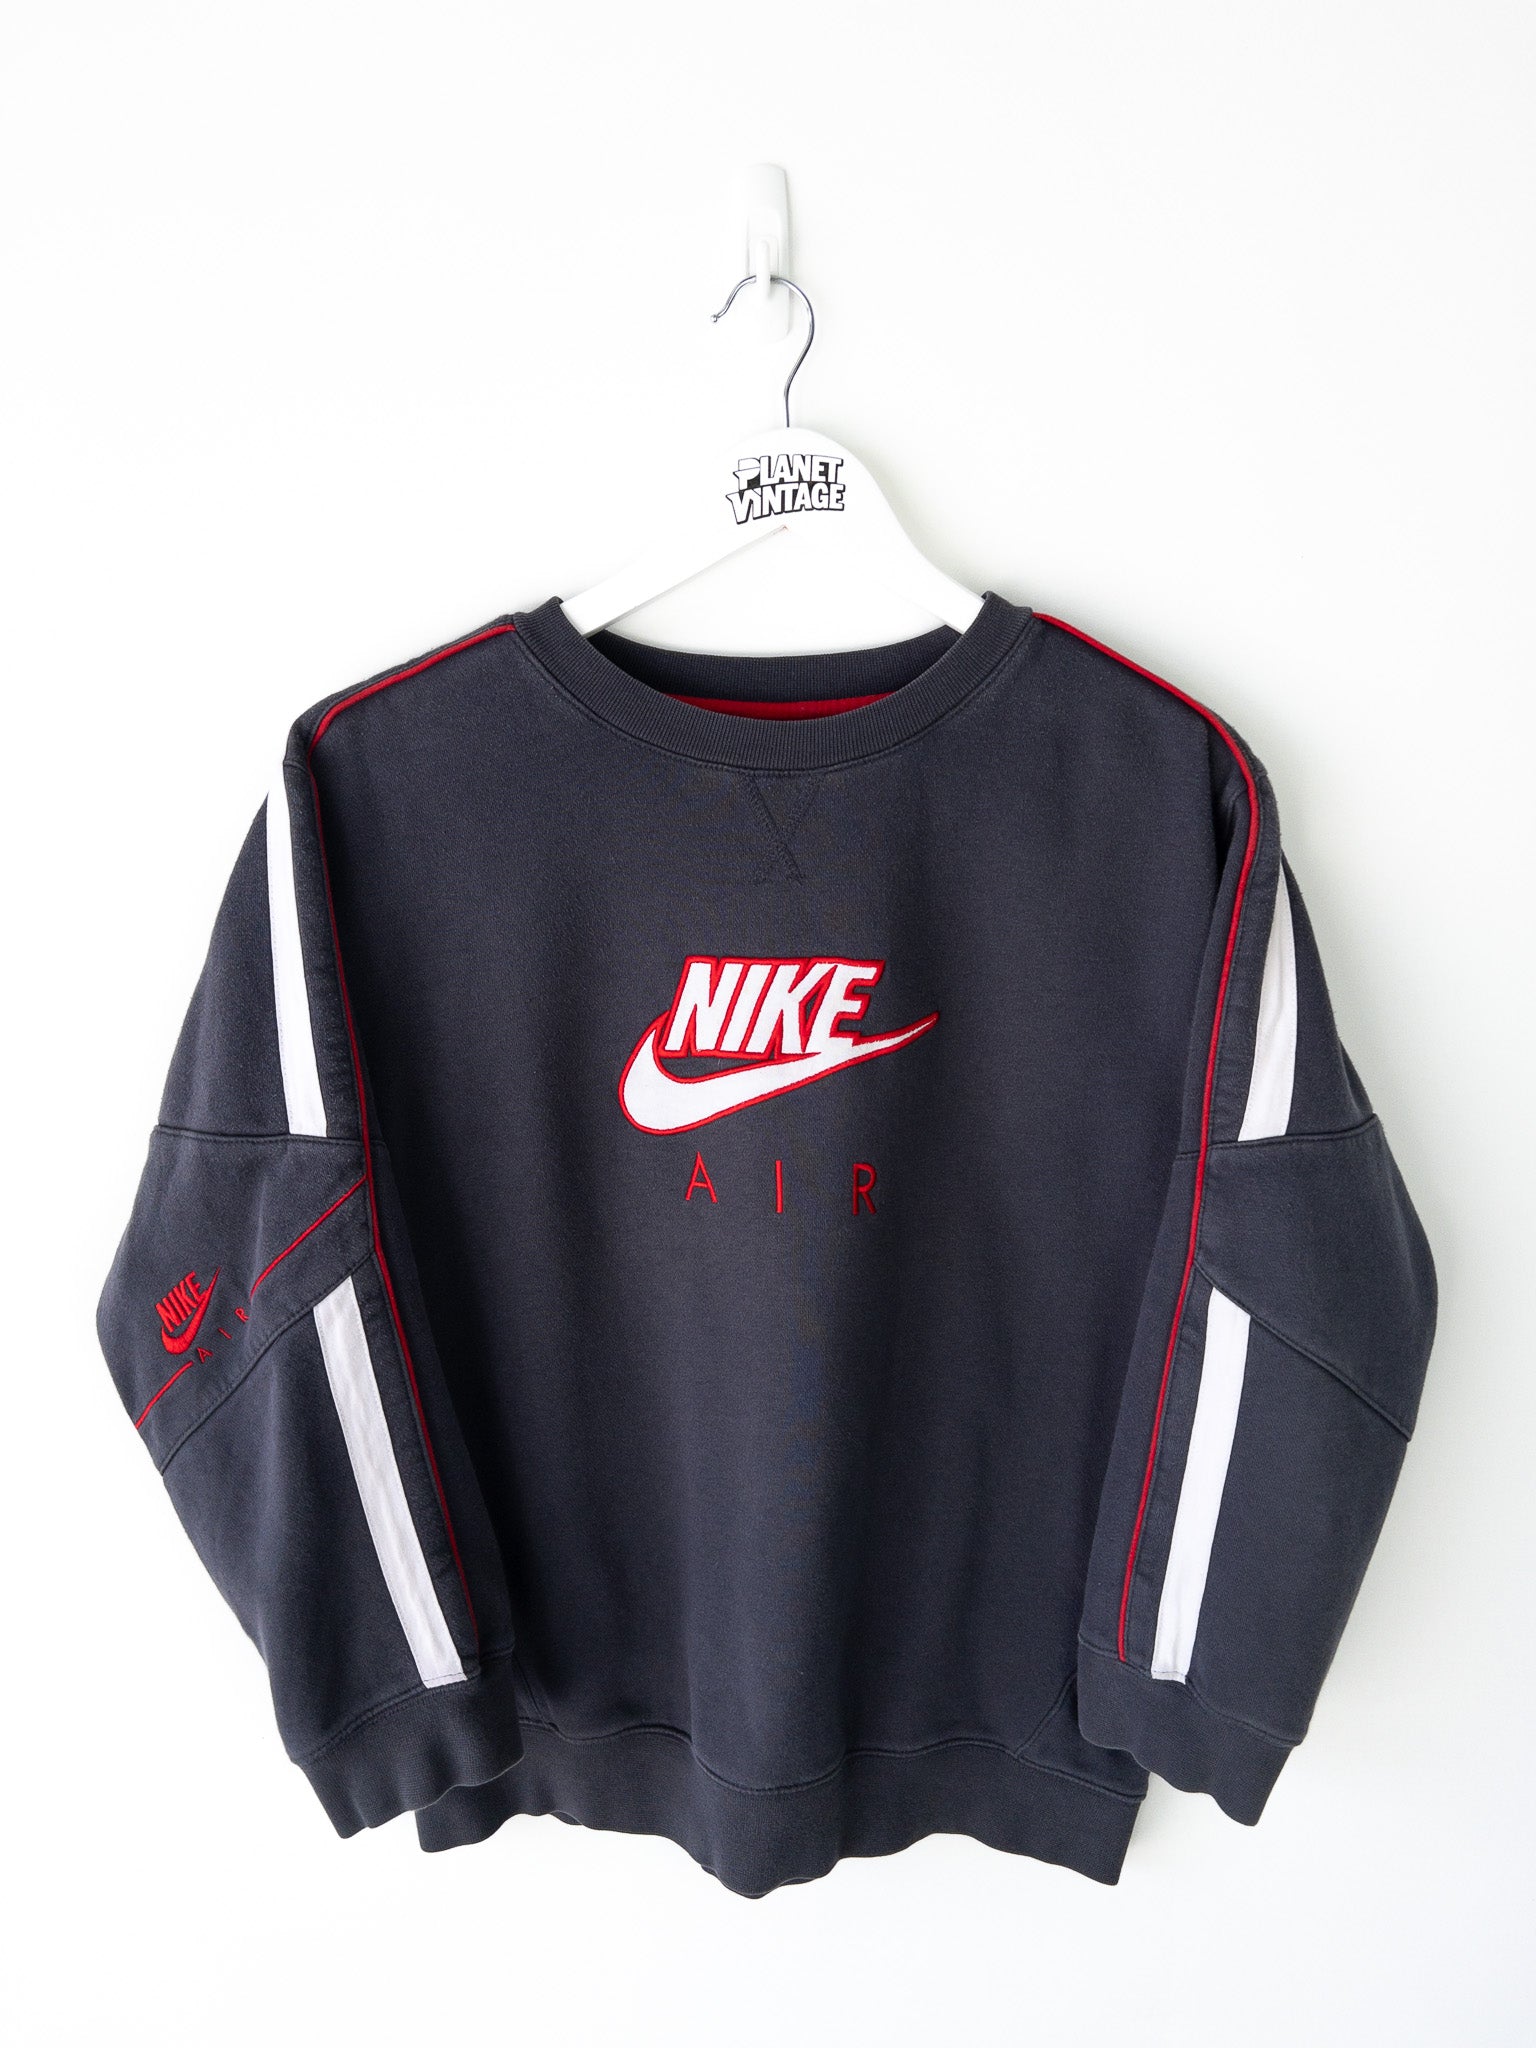 Vintage Nike Air Sweatshirt (XS)